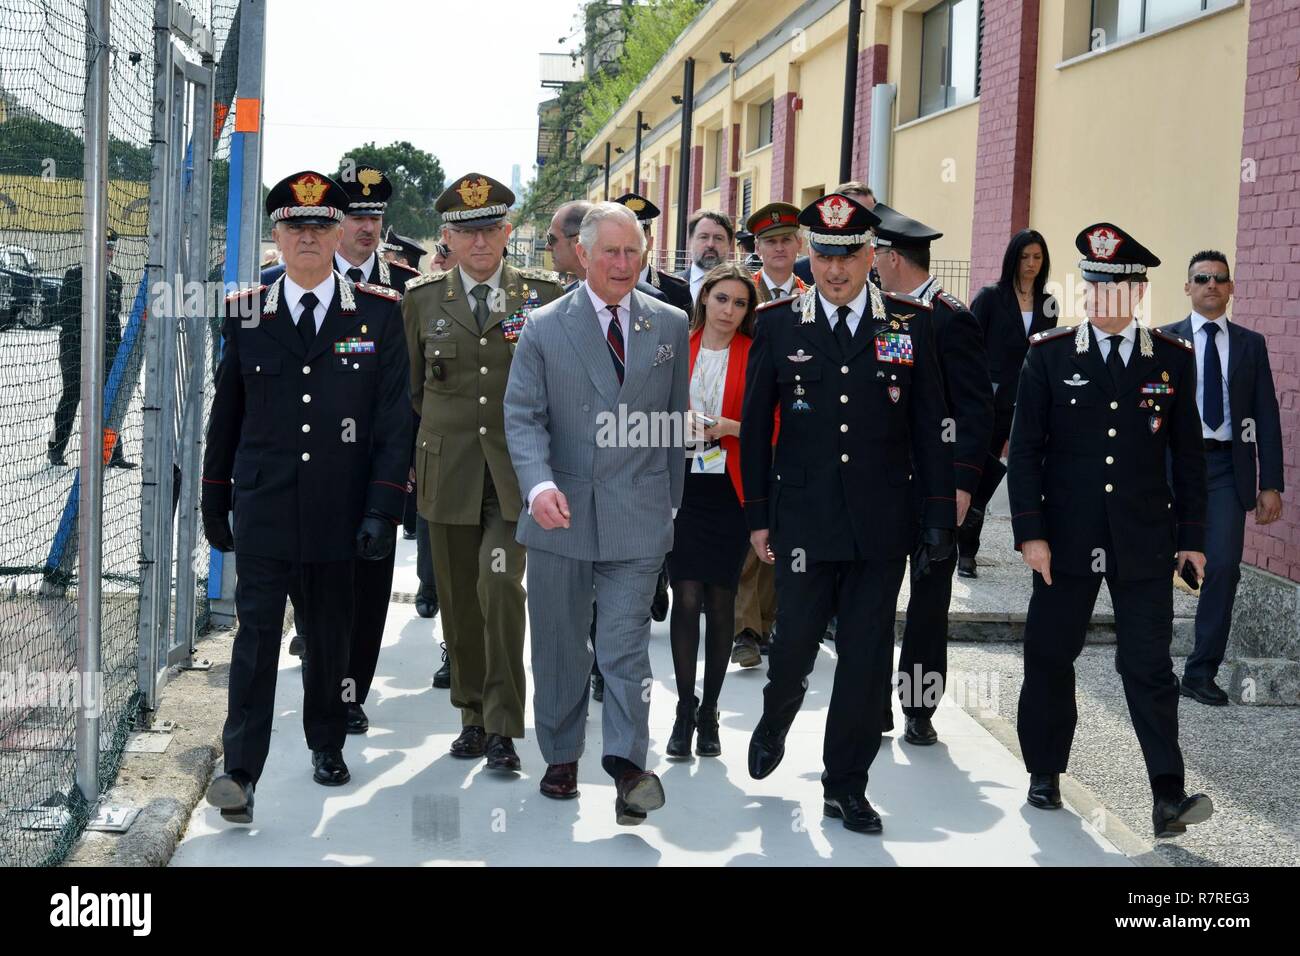 Seine Königliche Hoheit, Prinz Charles, Prinz von Wales, während eines Besuchs im Center of Excellence für Stabilität Polizei Units (CoESPU) Vicenza, Italien, April 1, 2017. Stockfoto